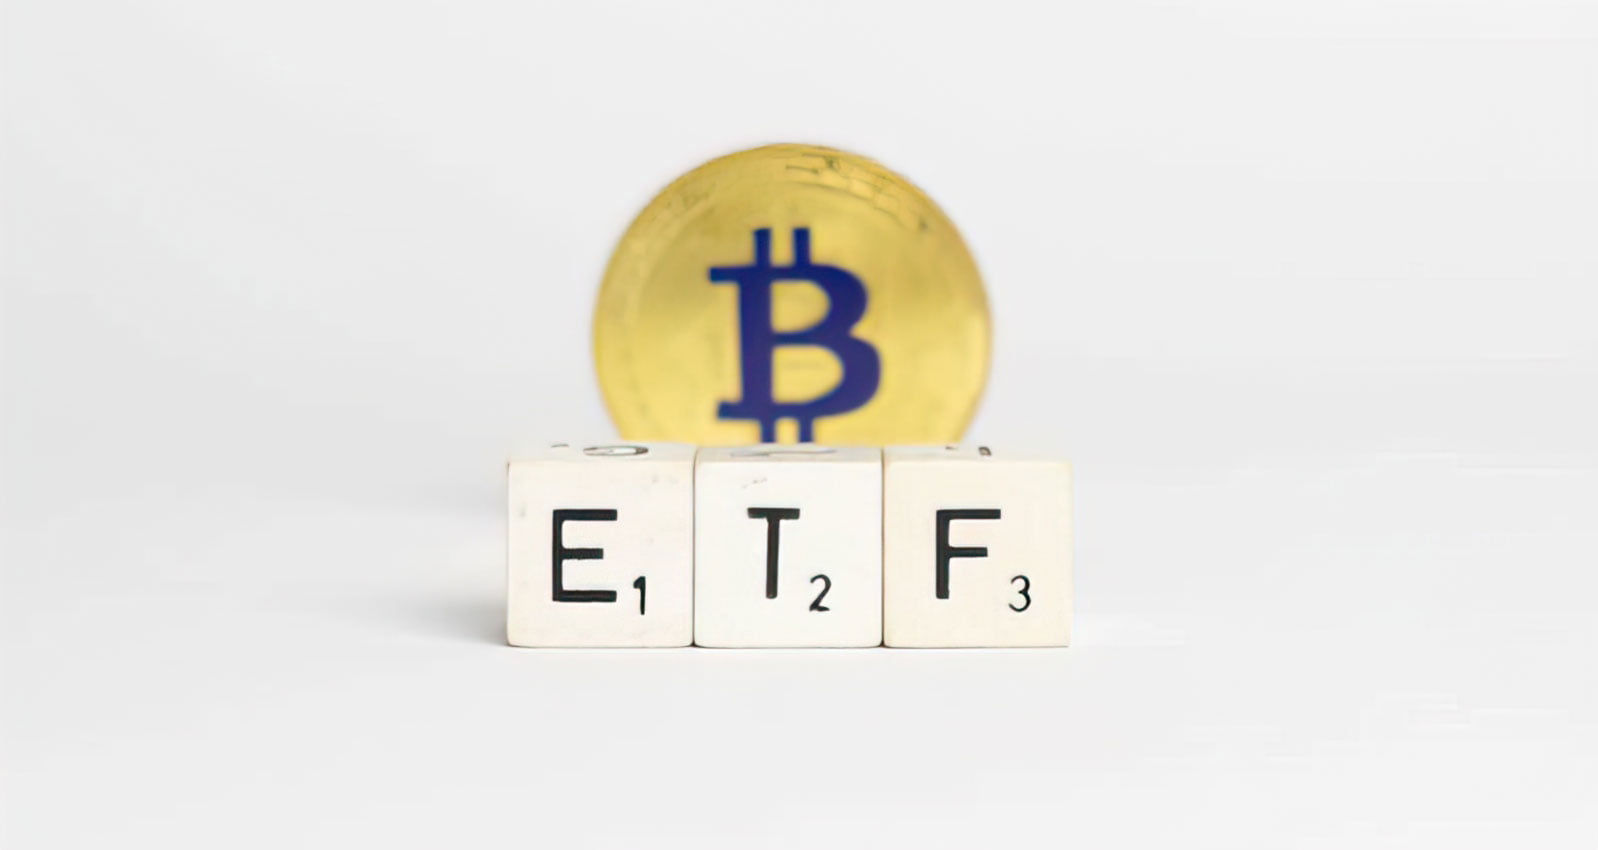 Вердикт по физическому биткоин-ETF от Valkyrie отсрочен до 2022 года